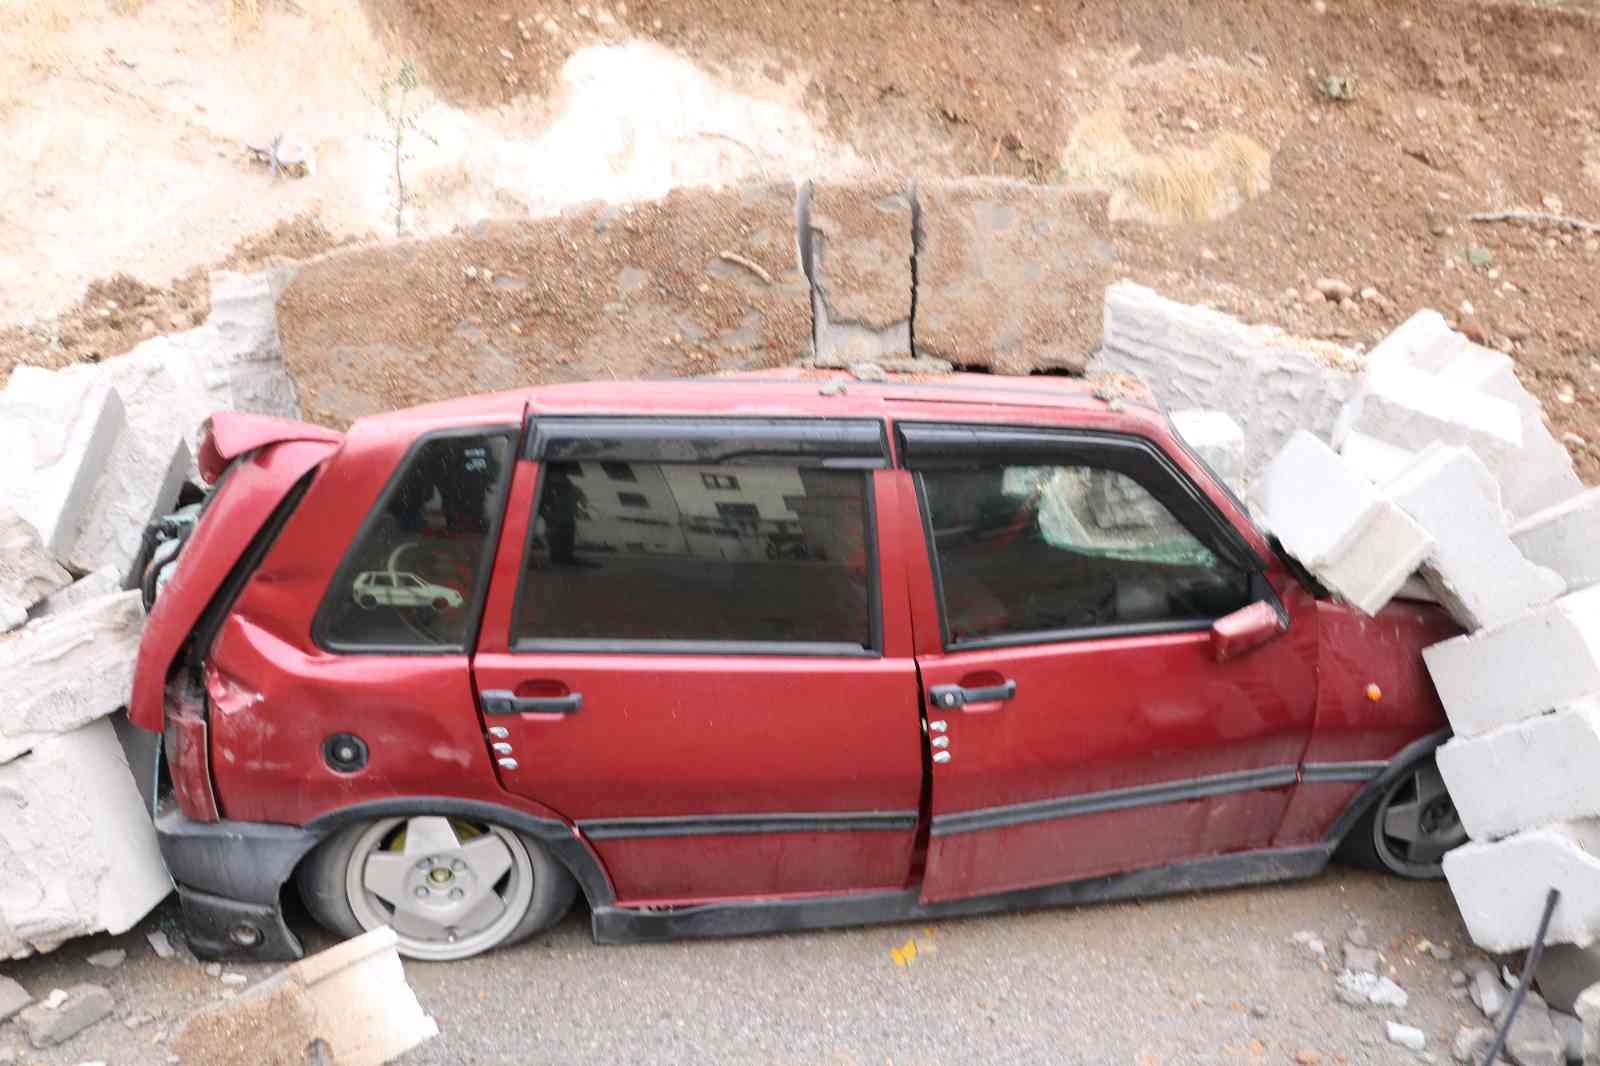 İstinat duvarı çöktü iki araç hurdaya döndü #kahramanmaras